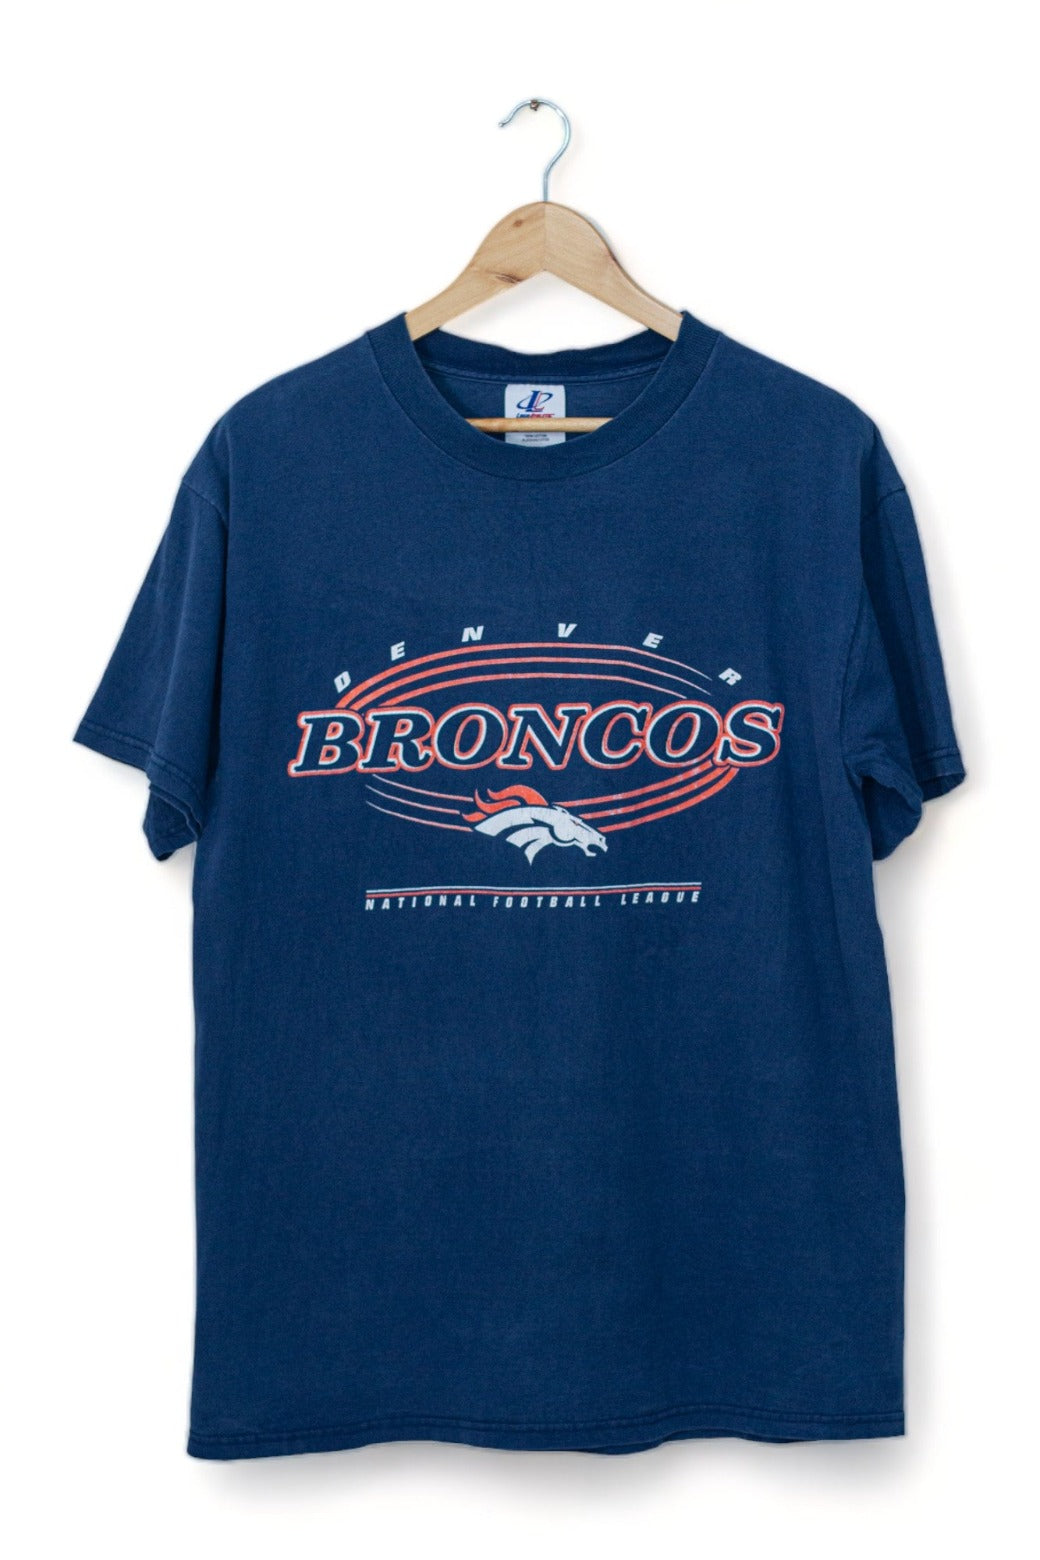 Denver Broncos - Team Logo Graphic T-Shirt (L)